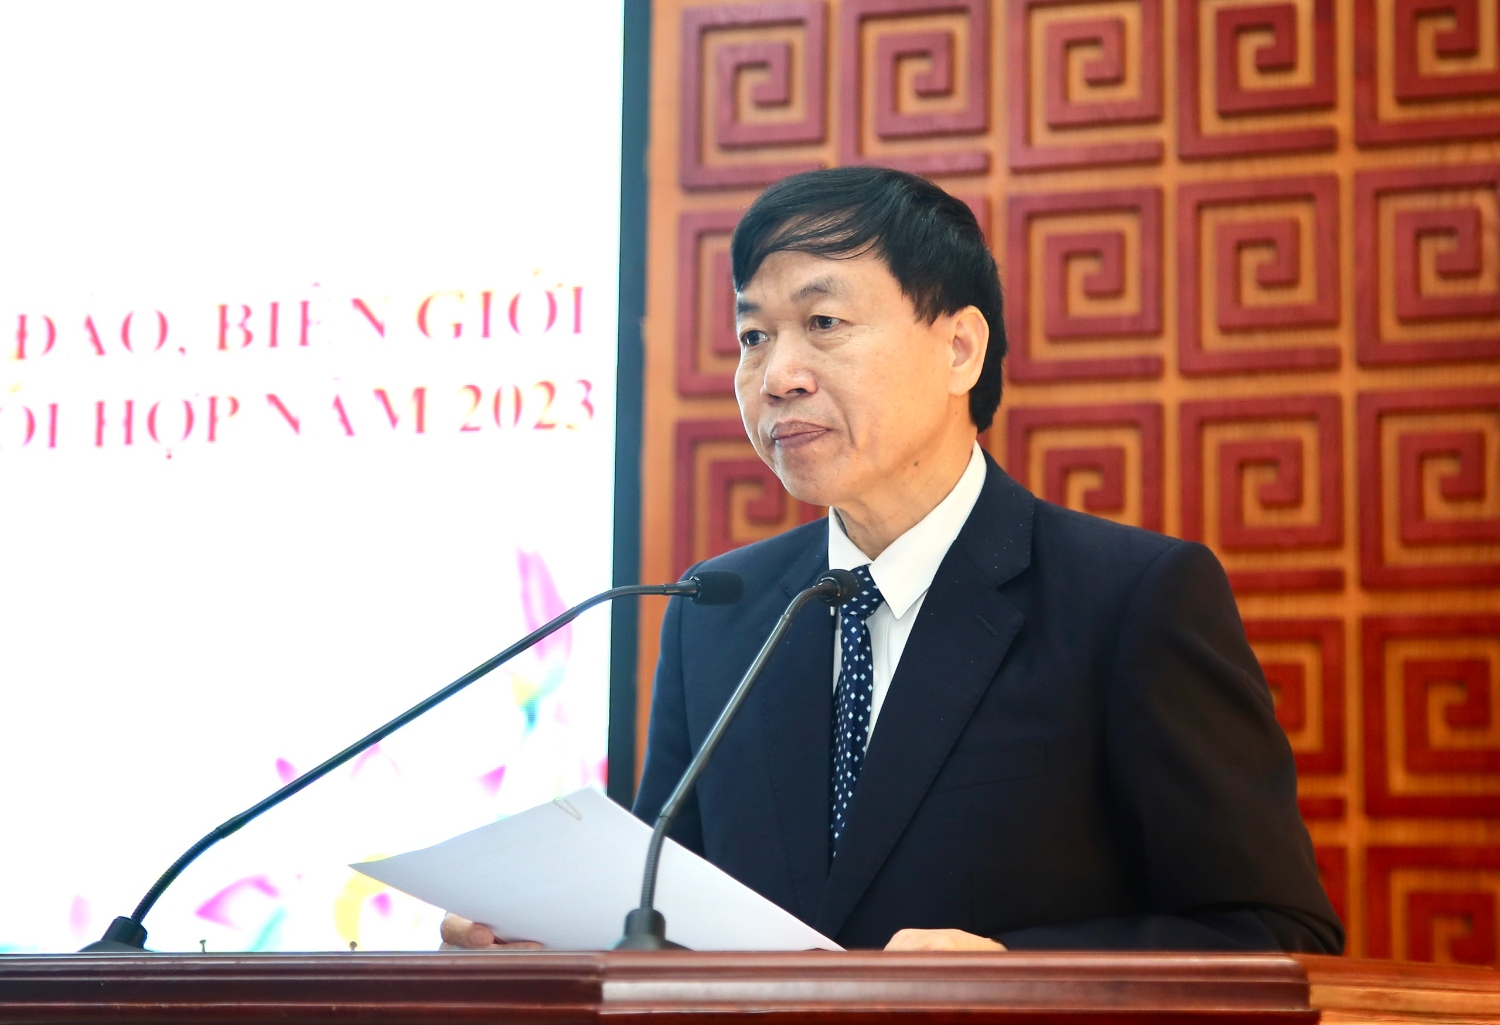 Đồng chí Lê Văn Lương - Phó Bí thư Thường trực Tỉnh ủy phát biểu khai mạc Hội nghị